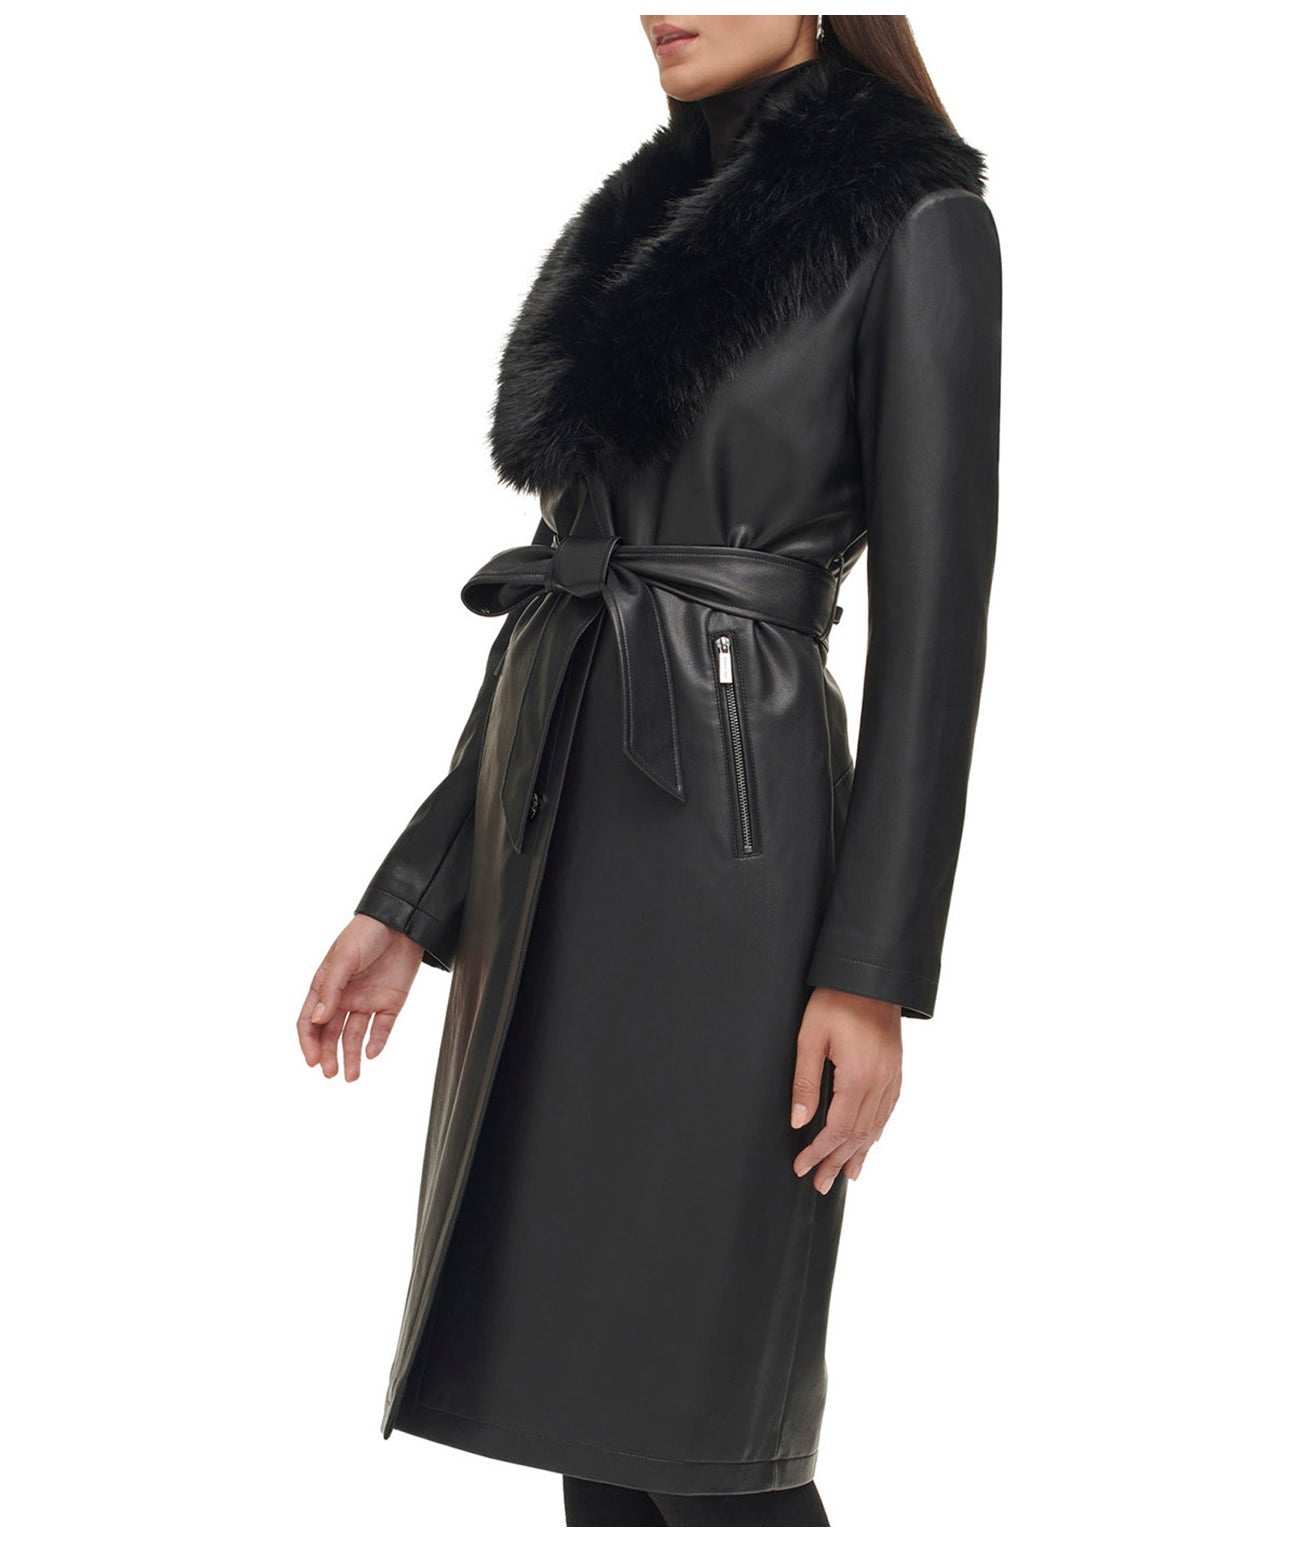 Women's Fur Sheepskin Leather Coat In Black